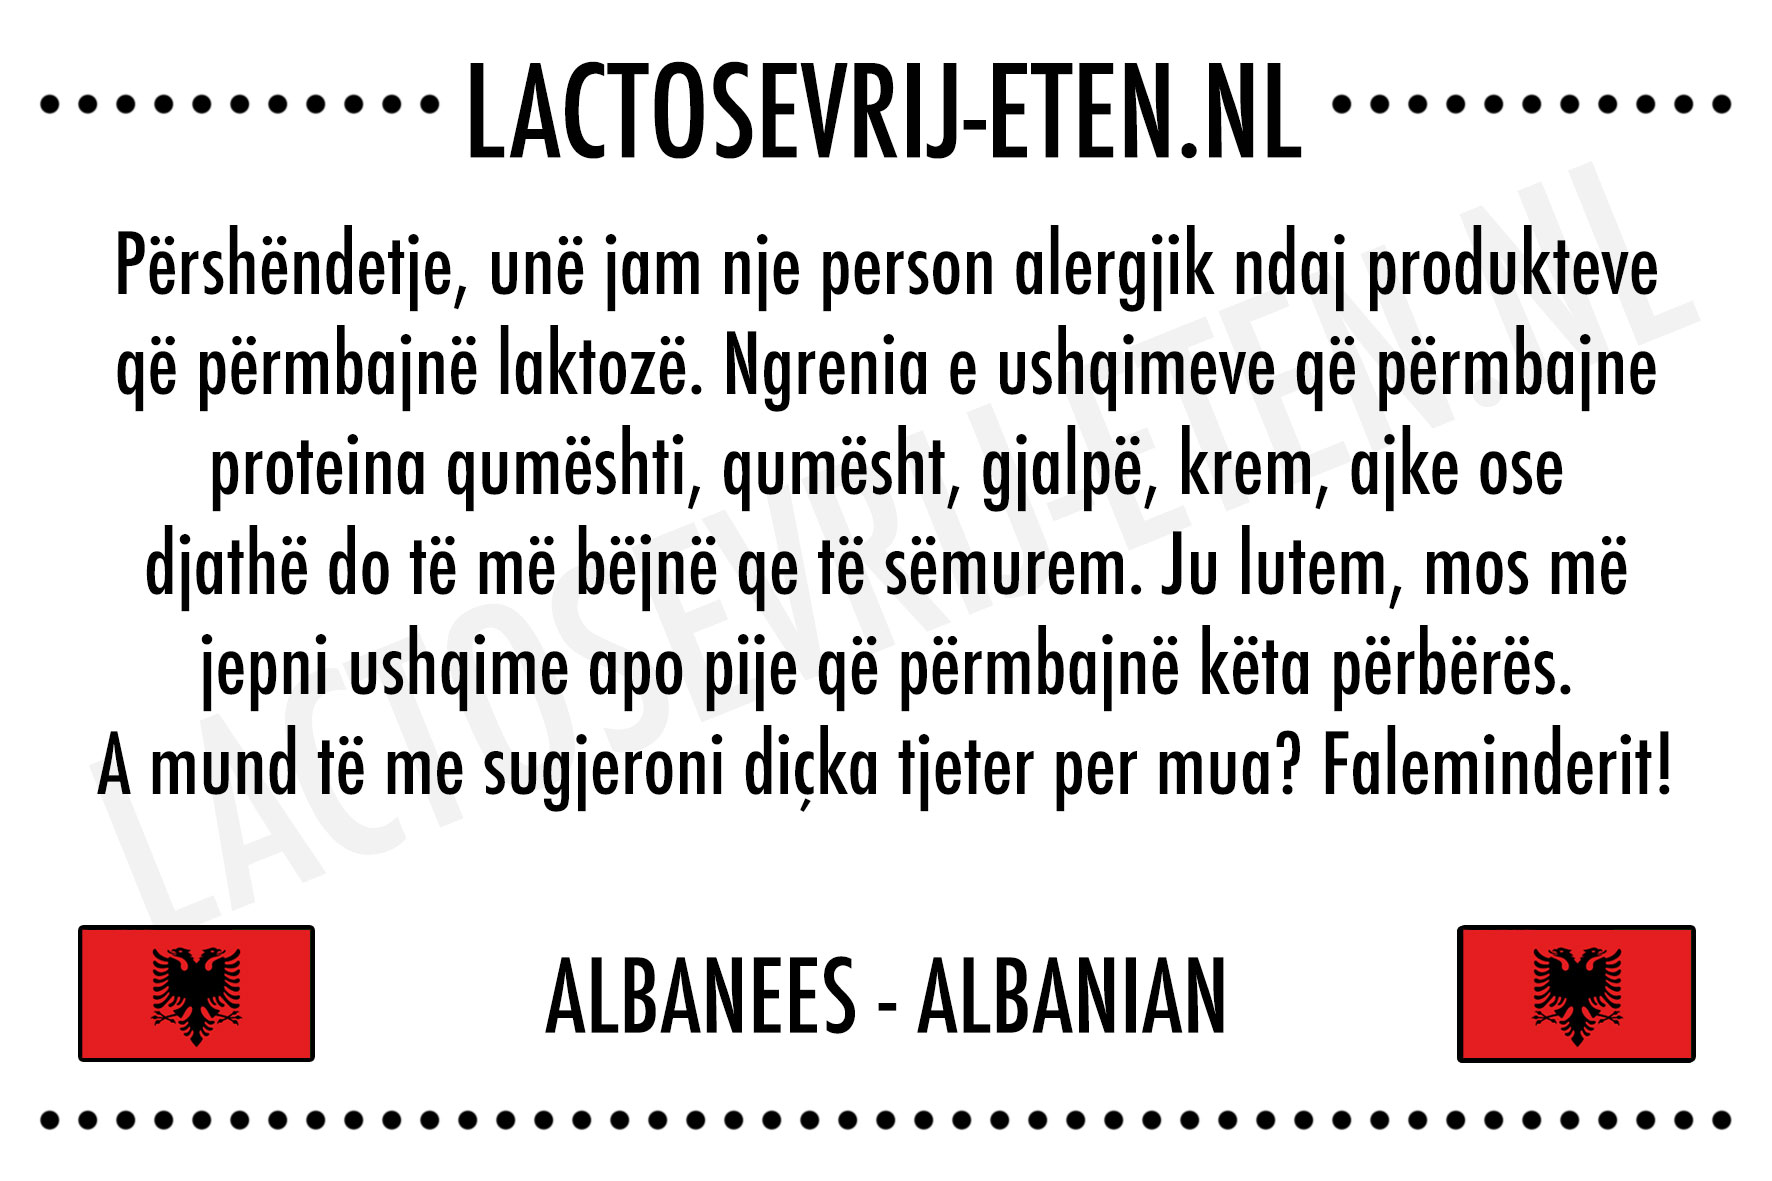 Lactosevrije allergenenkaart Albanees